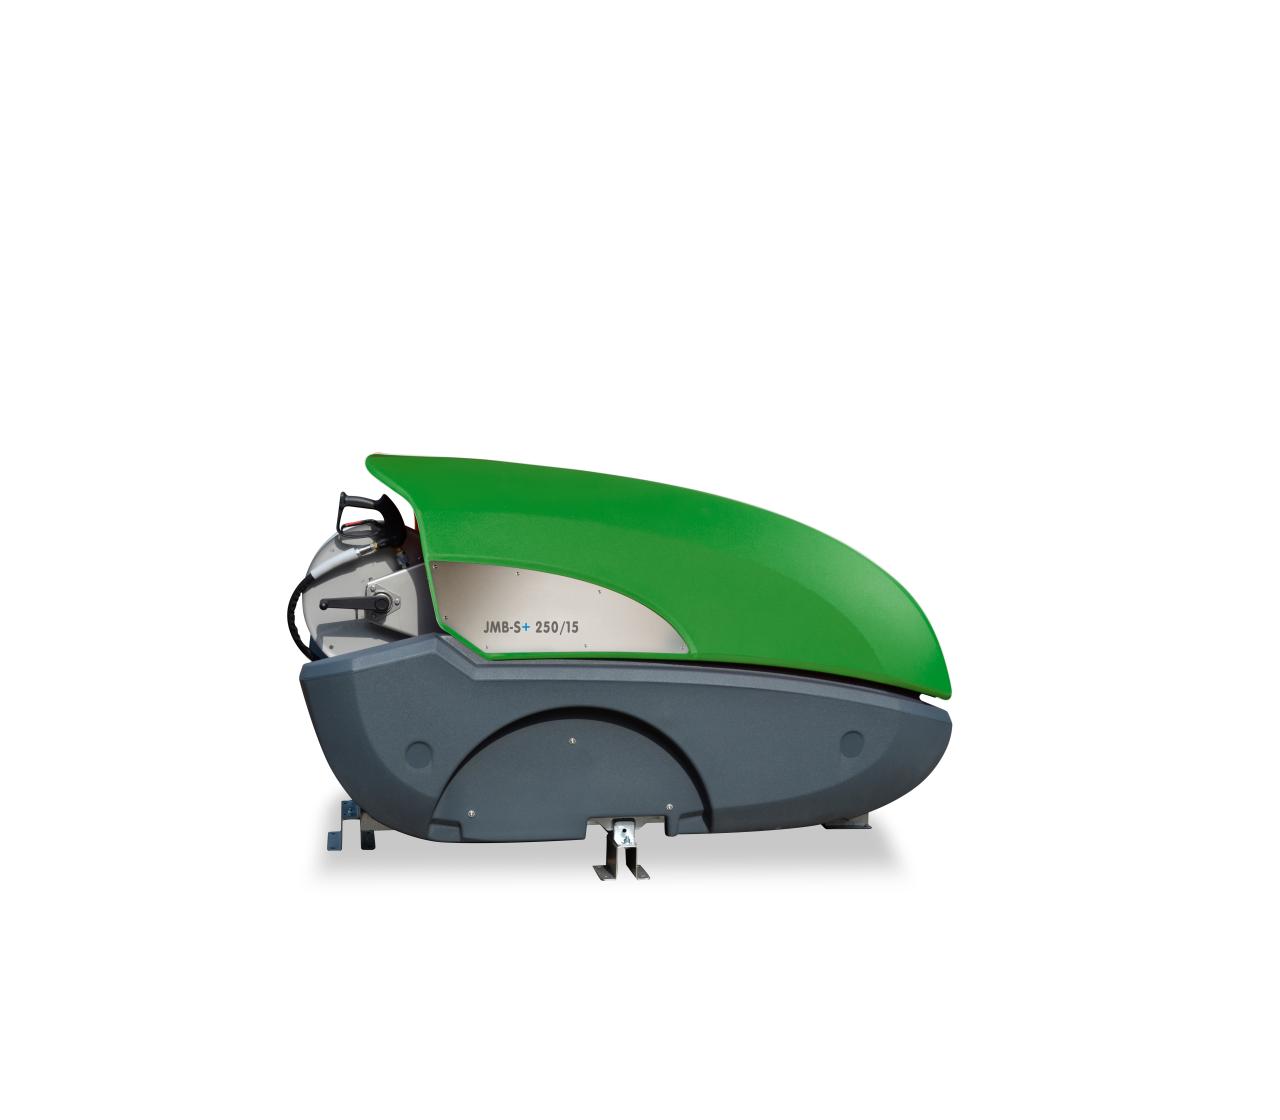 DiBO JMB-S/S+ skid versie, geschikt om op te heffen met heftruck, uitgerust met moderne & groene technologieën